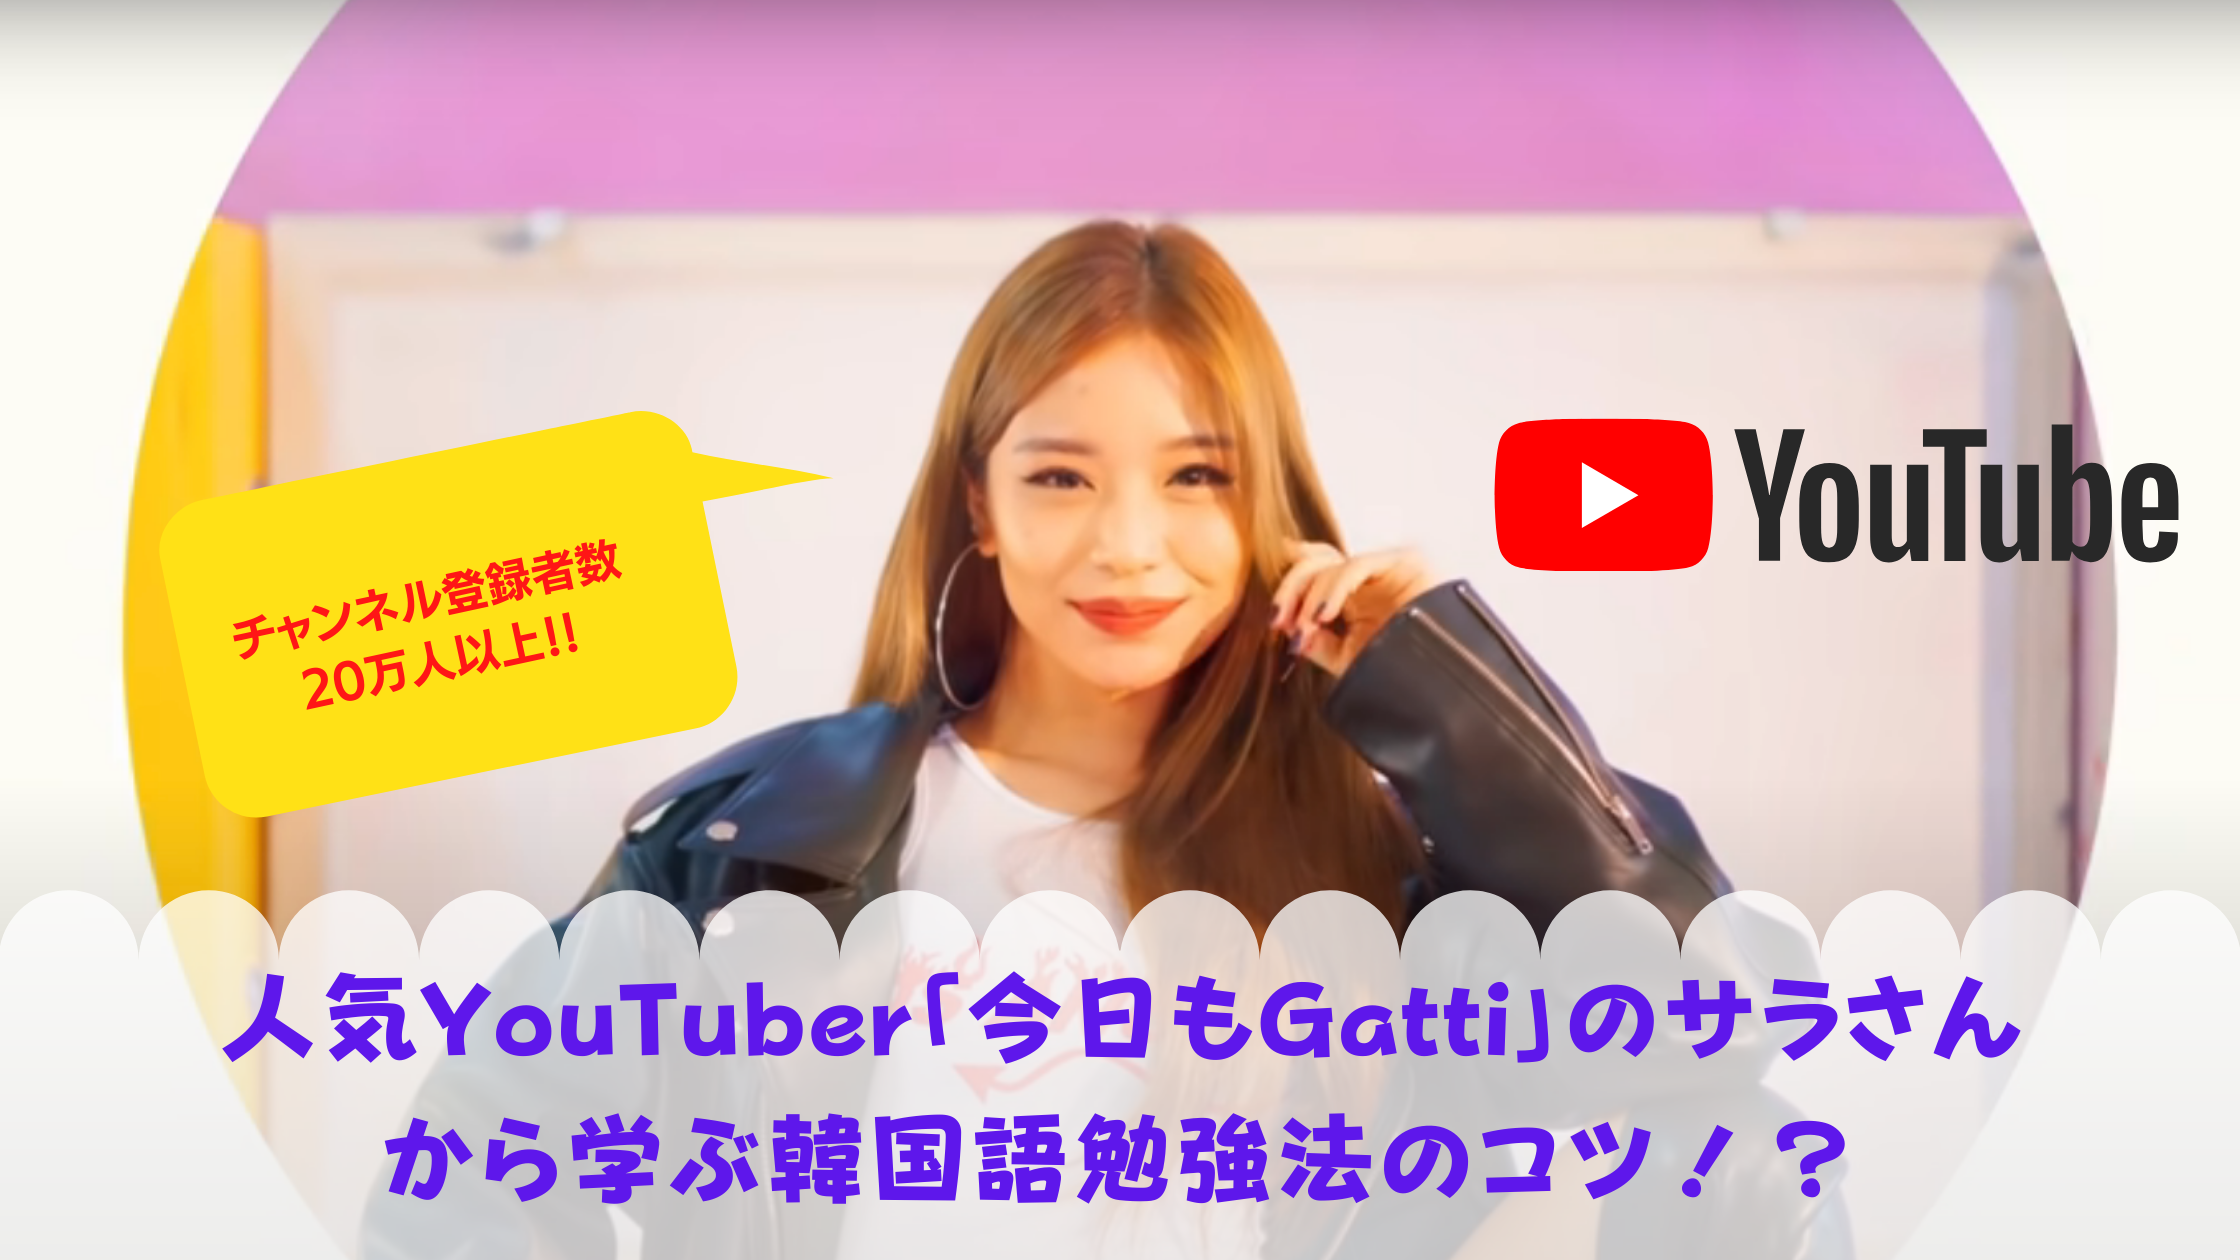 今日もgatti 韓国系youtuberの韓国語勉強のコツを検証してみた 30歳からの韓国語